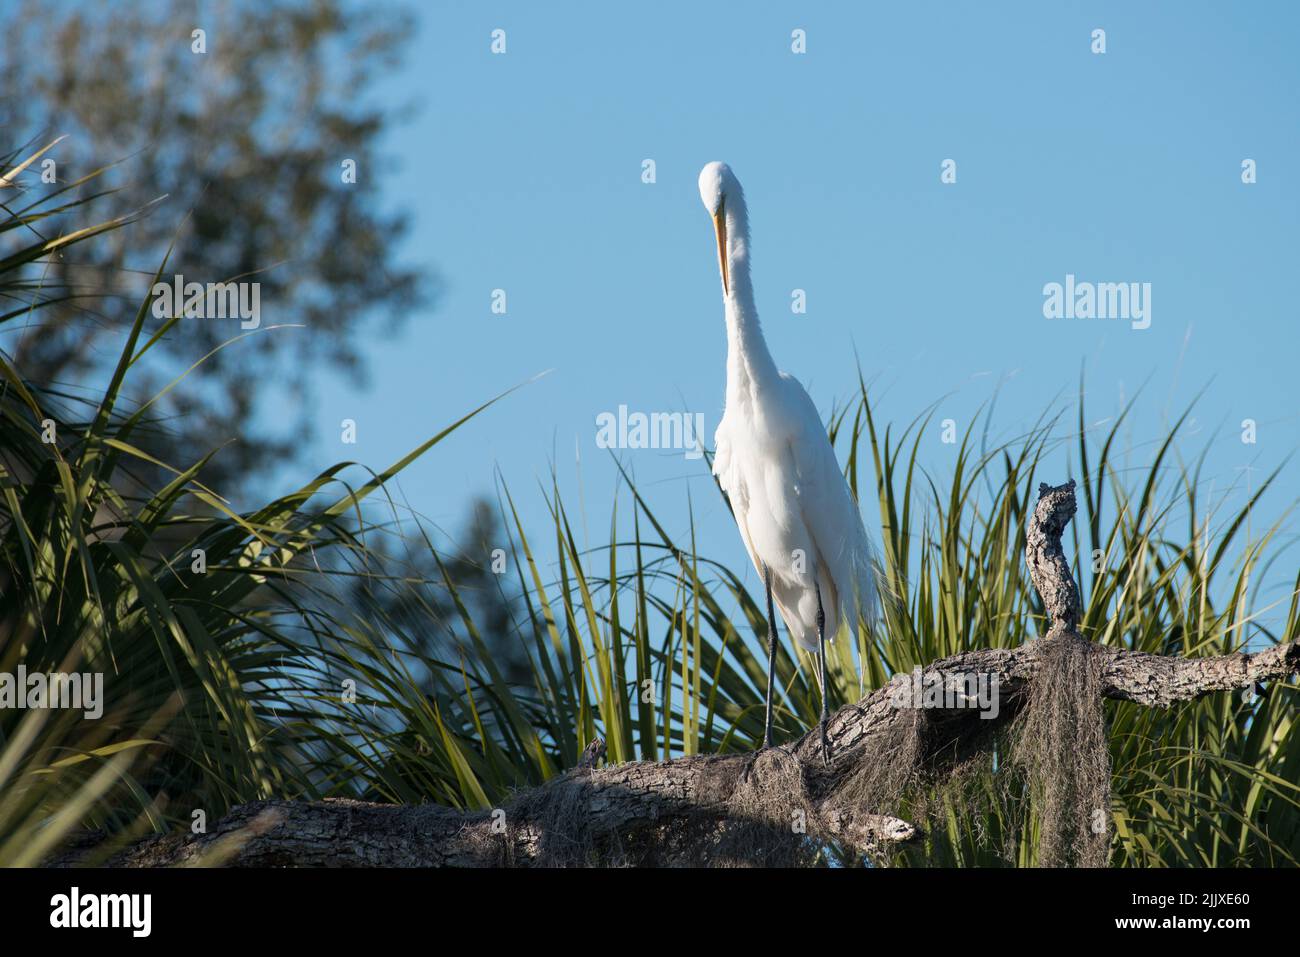 Una Gran Garza se asienta en una sucursal en el Parque Estatal Tera CEIA Preserve, Florida, EE.UU Foto de stock